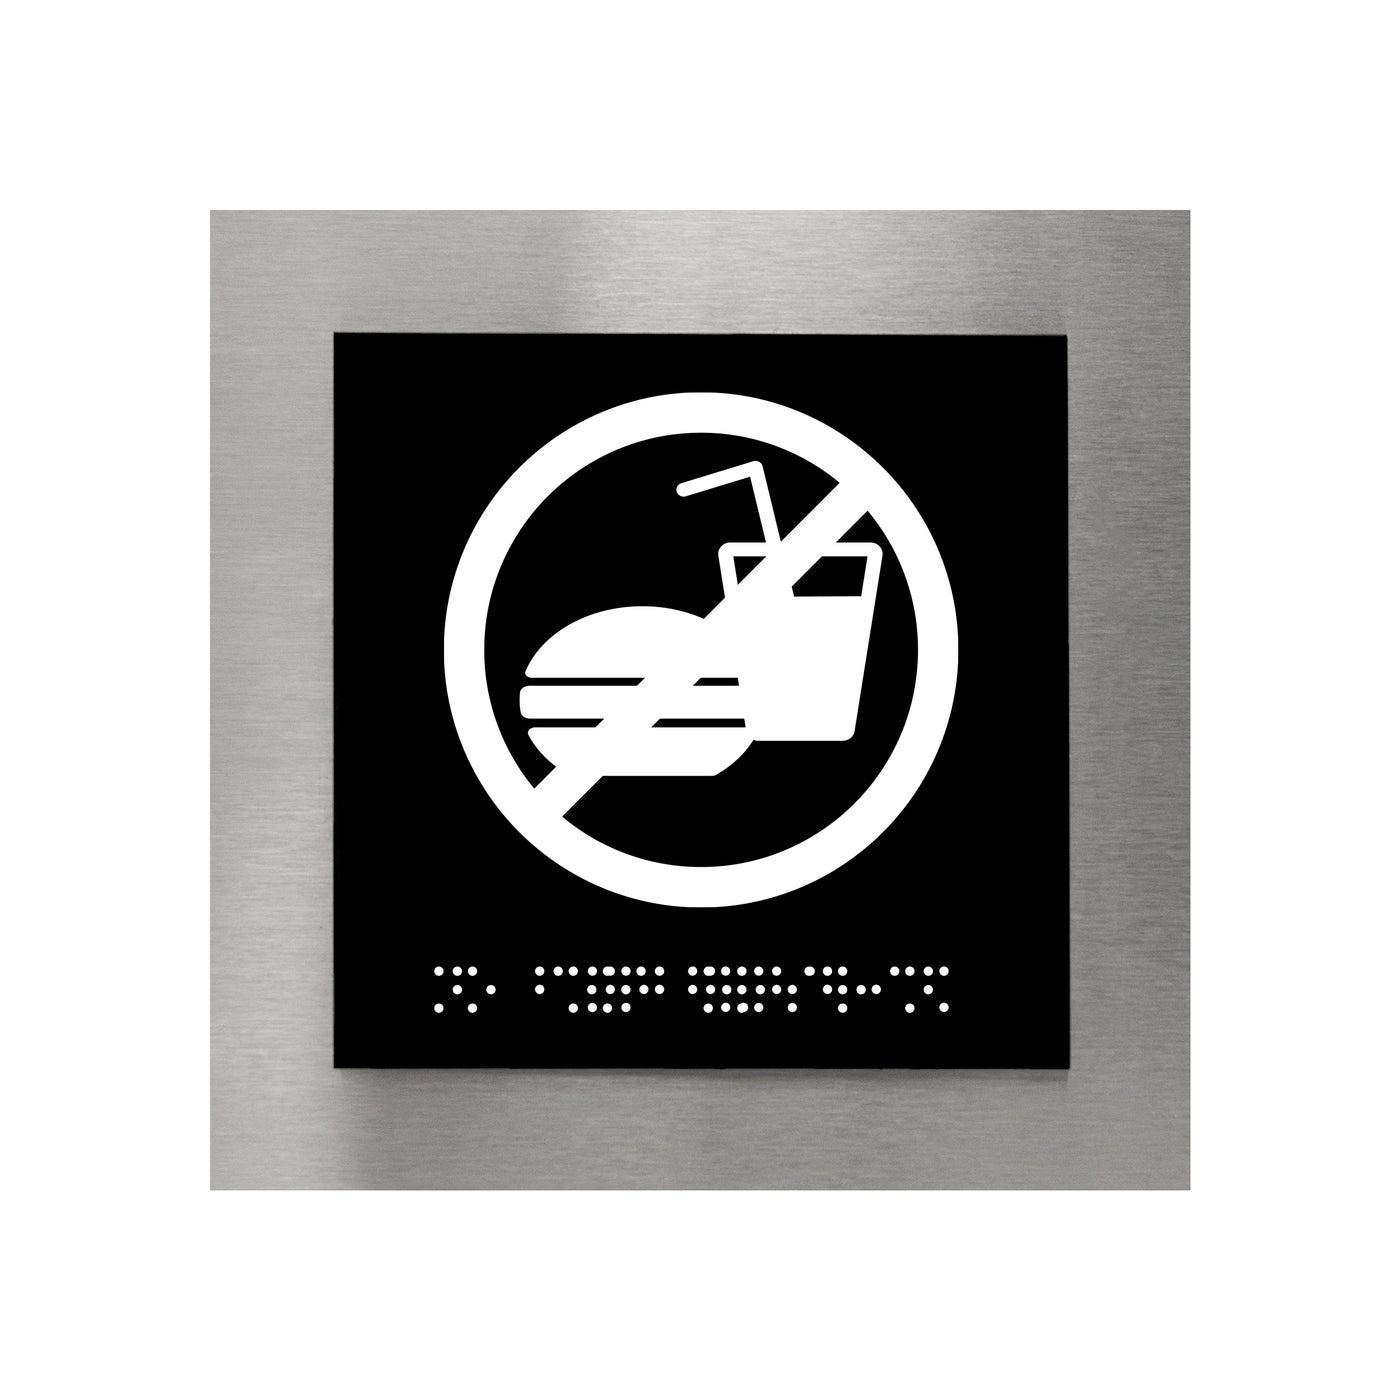 Information Signs - Steel No Food Or Drink Sign "Modern" Design